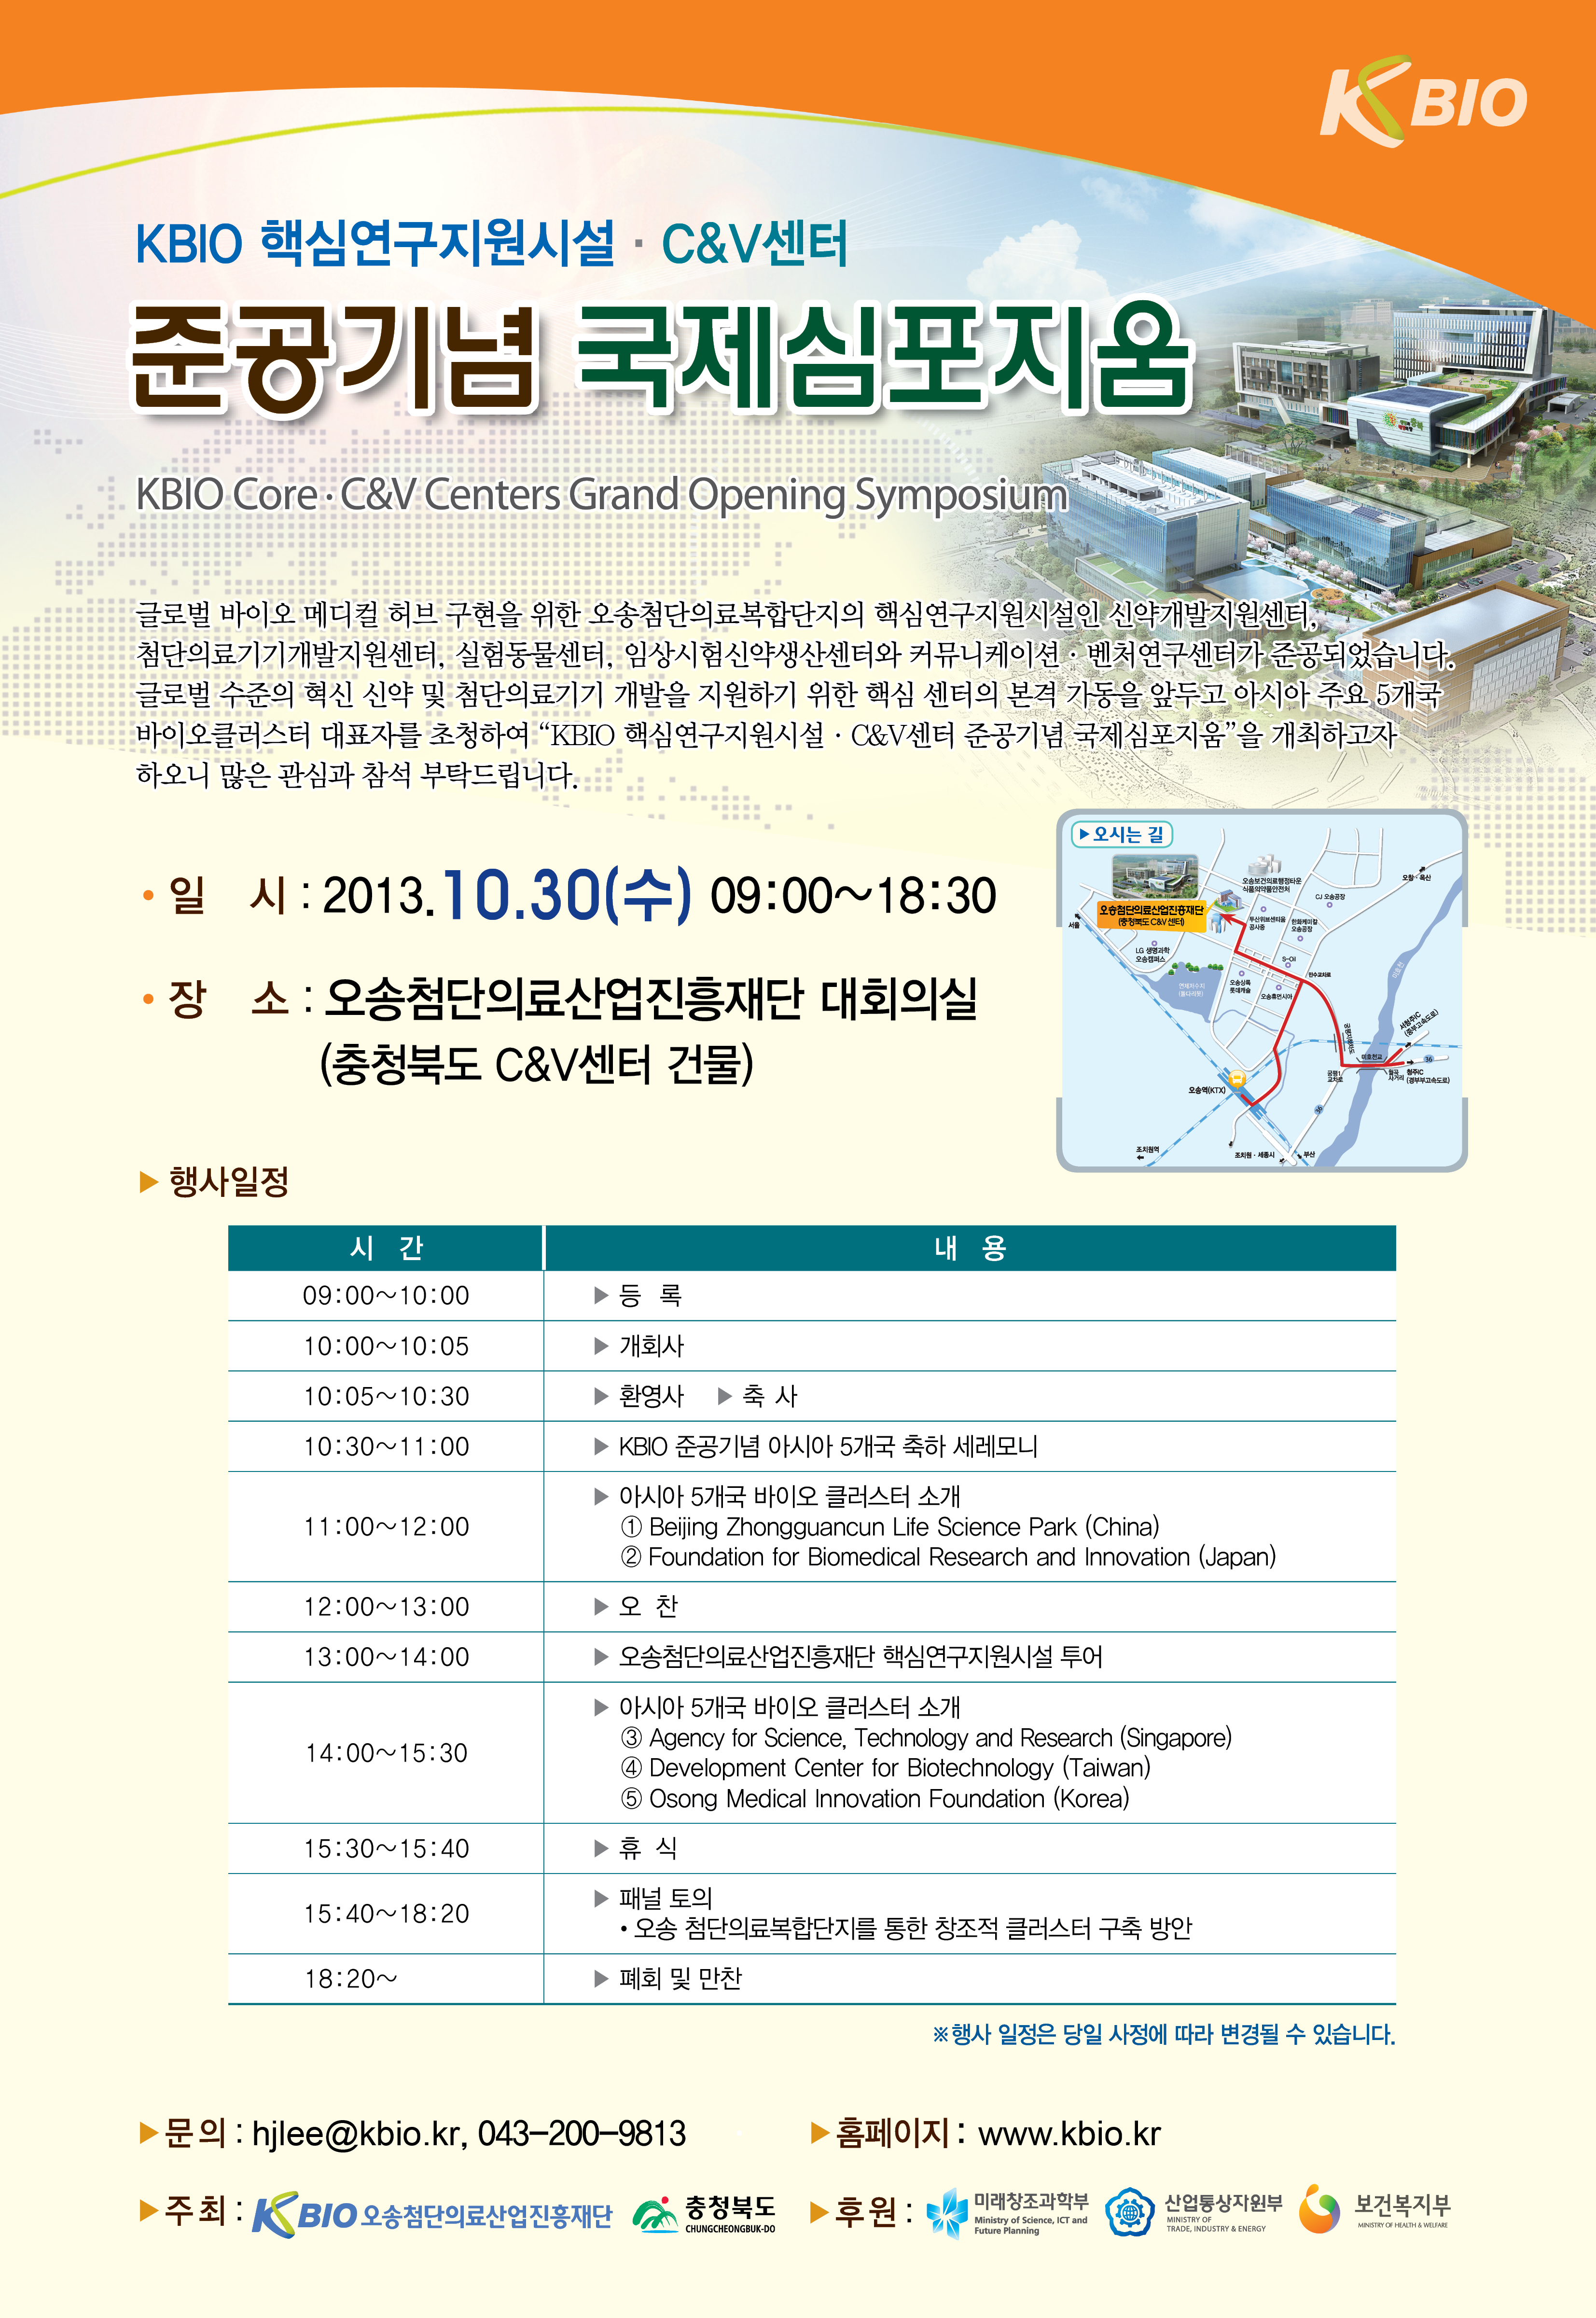 KBIO 핵심연구지원시설·C&V 센터 준공기념 국제심포지움 개최(2013. 10. 30)